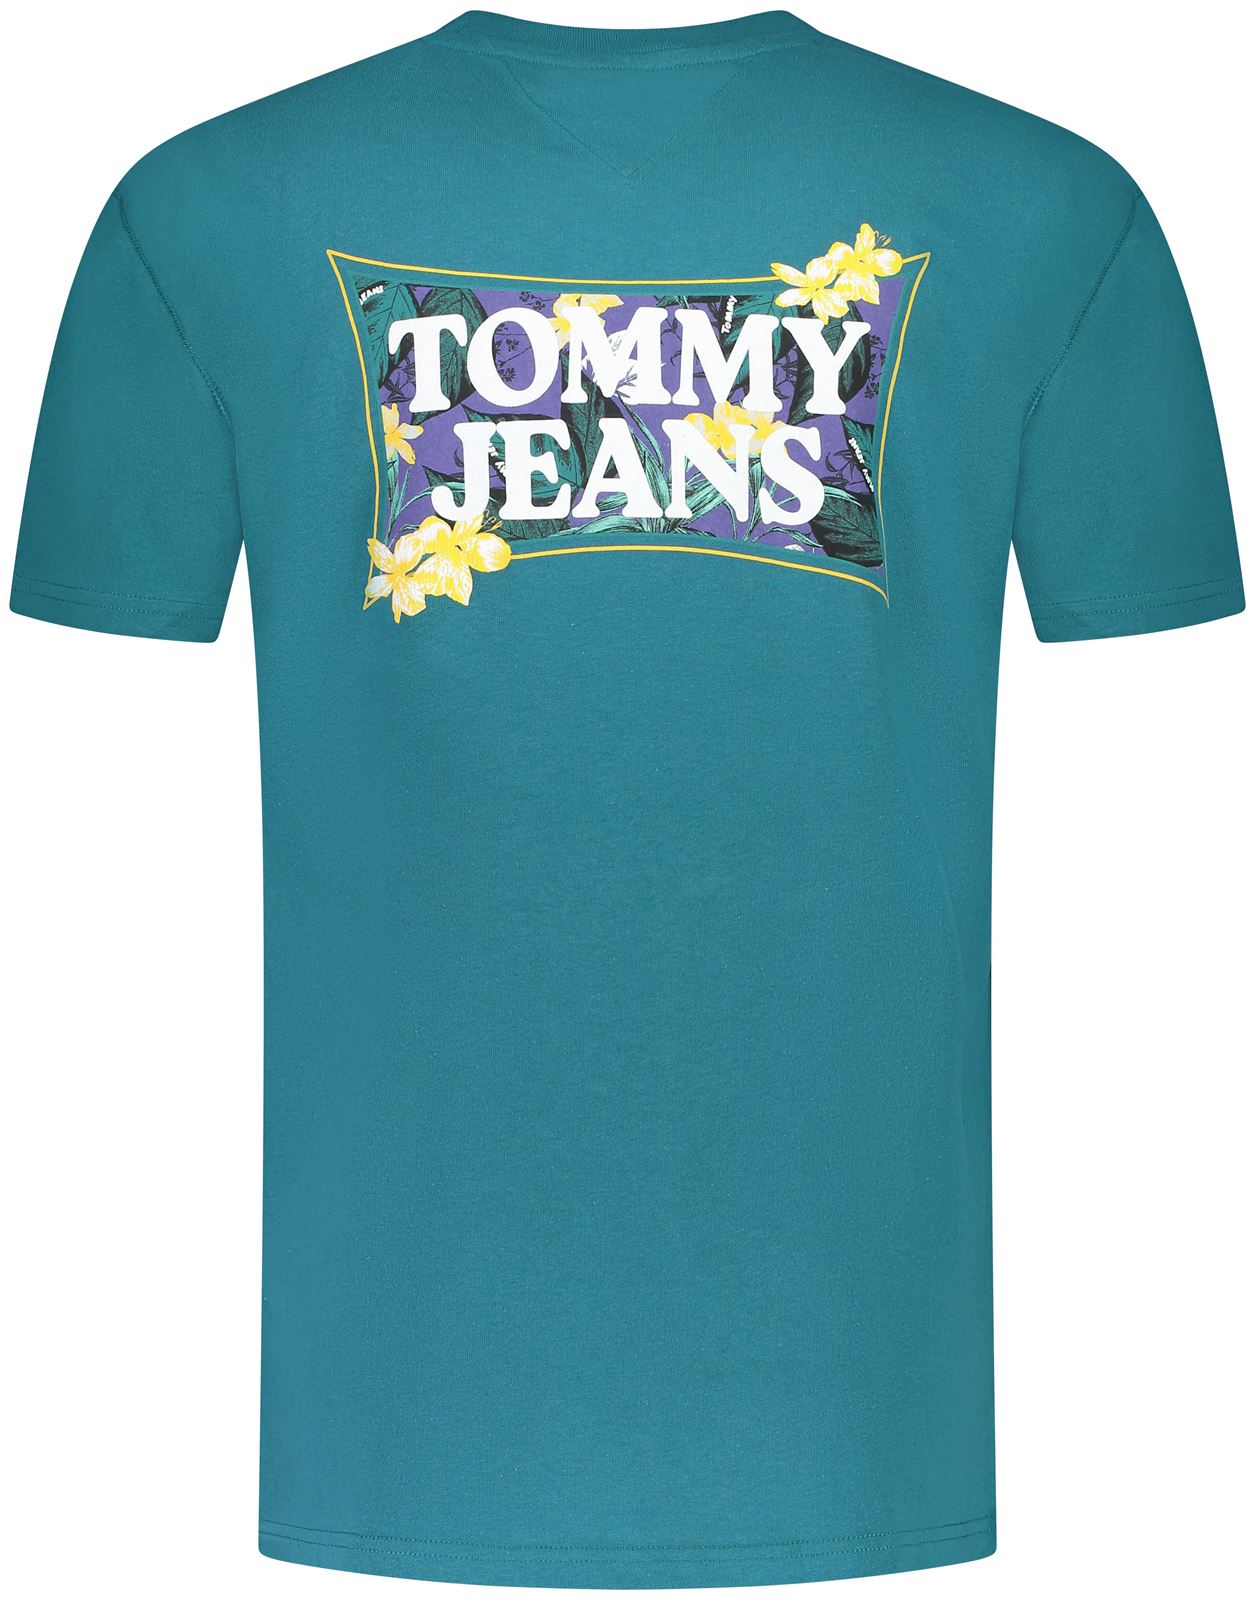 Camiseta Tommy Jeans DM0DM18562 CT0 timeless teal - Imagen 2